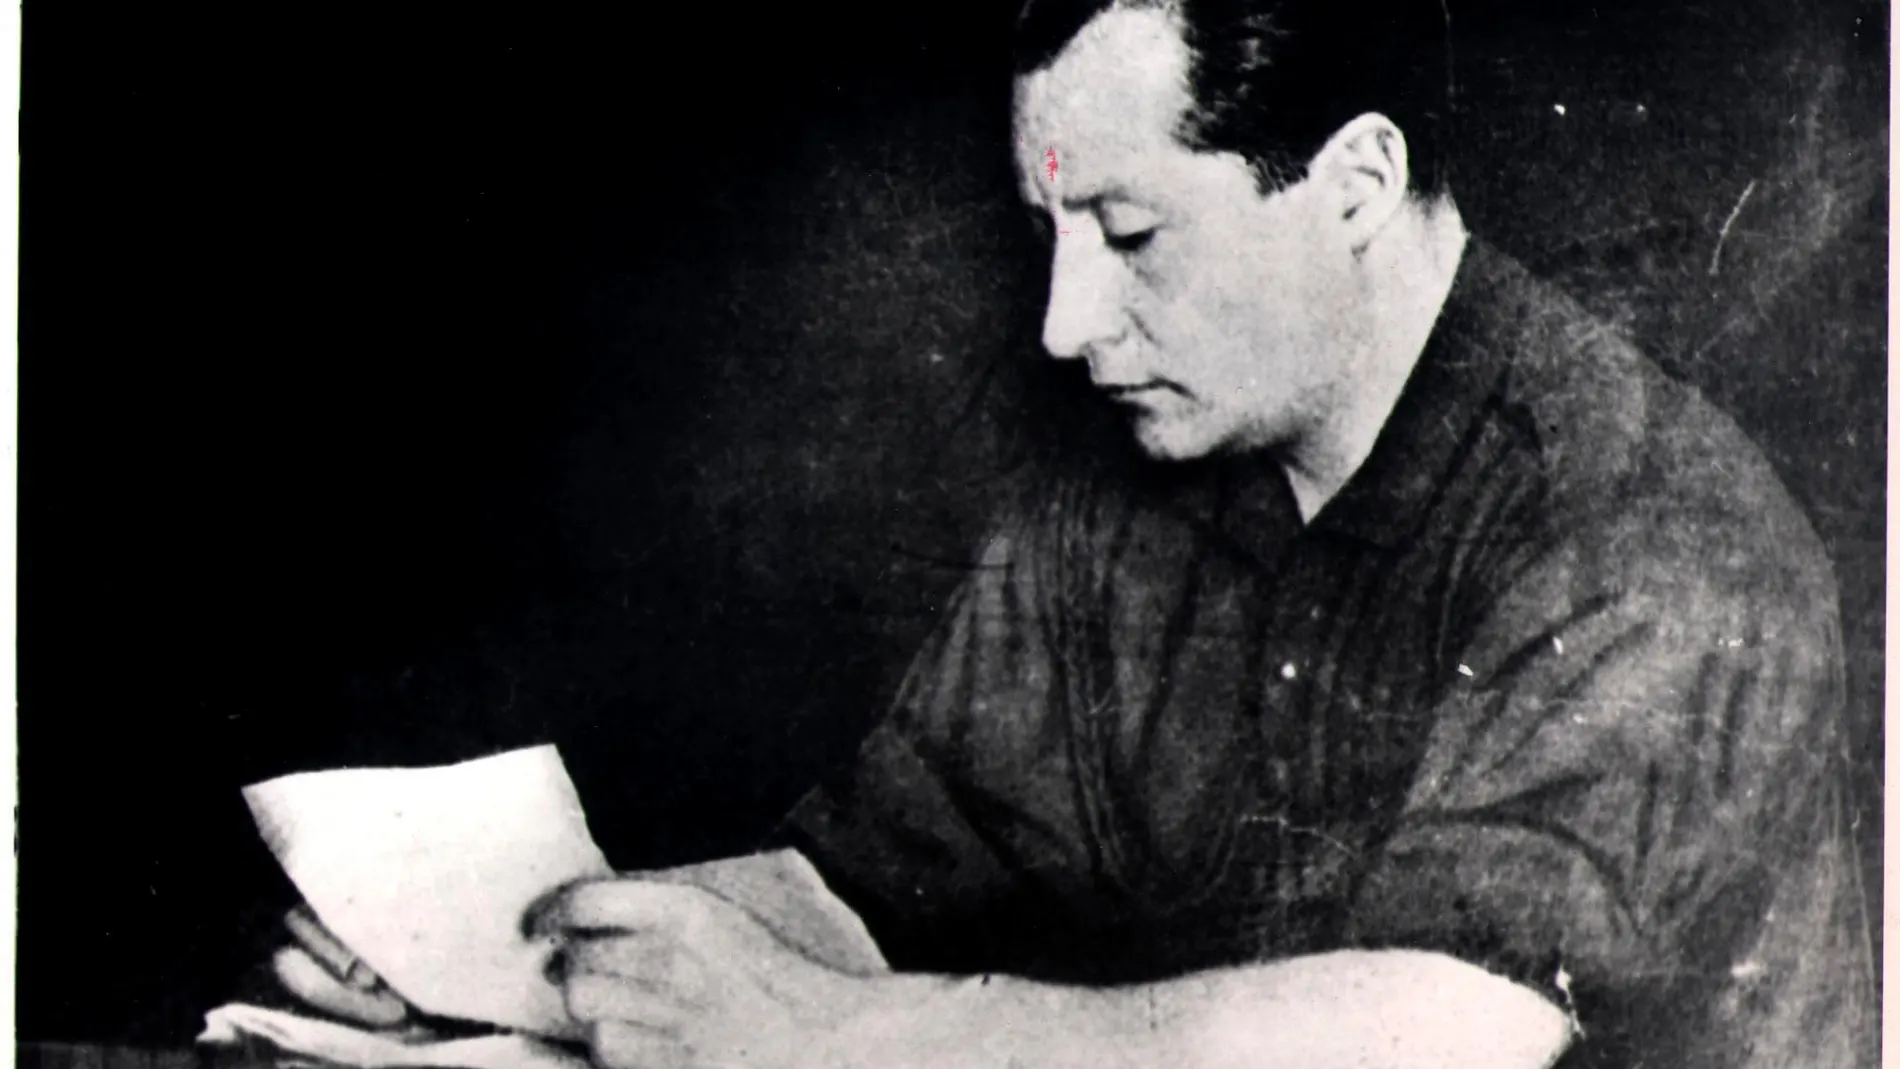 José Antonio conservaba entre sus papeles privados un manuscrito de su puño y letra con el nombre de los miembros de un gobierno de concertación nacional